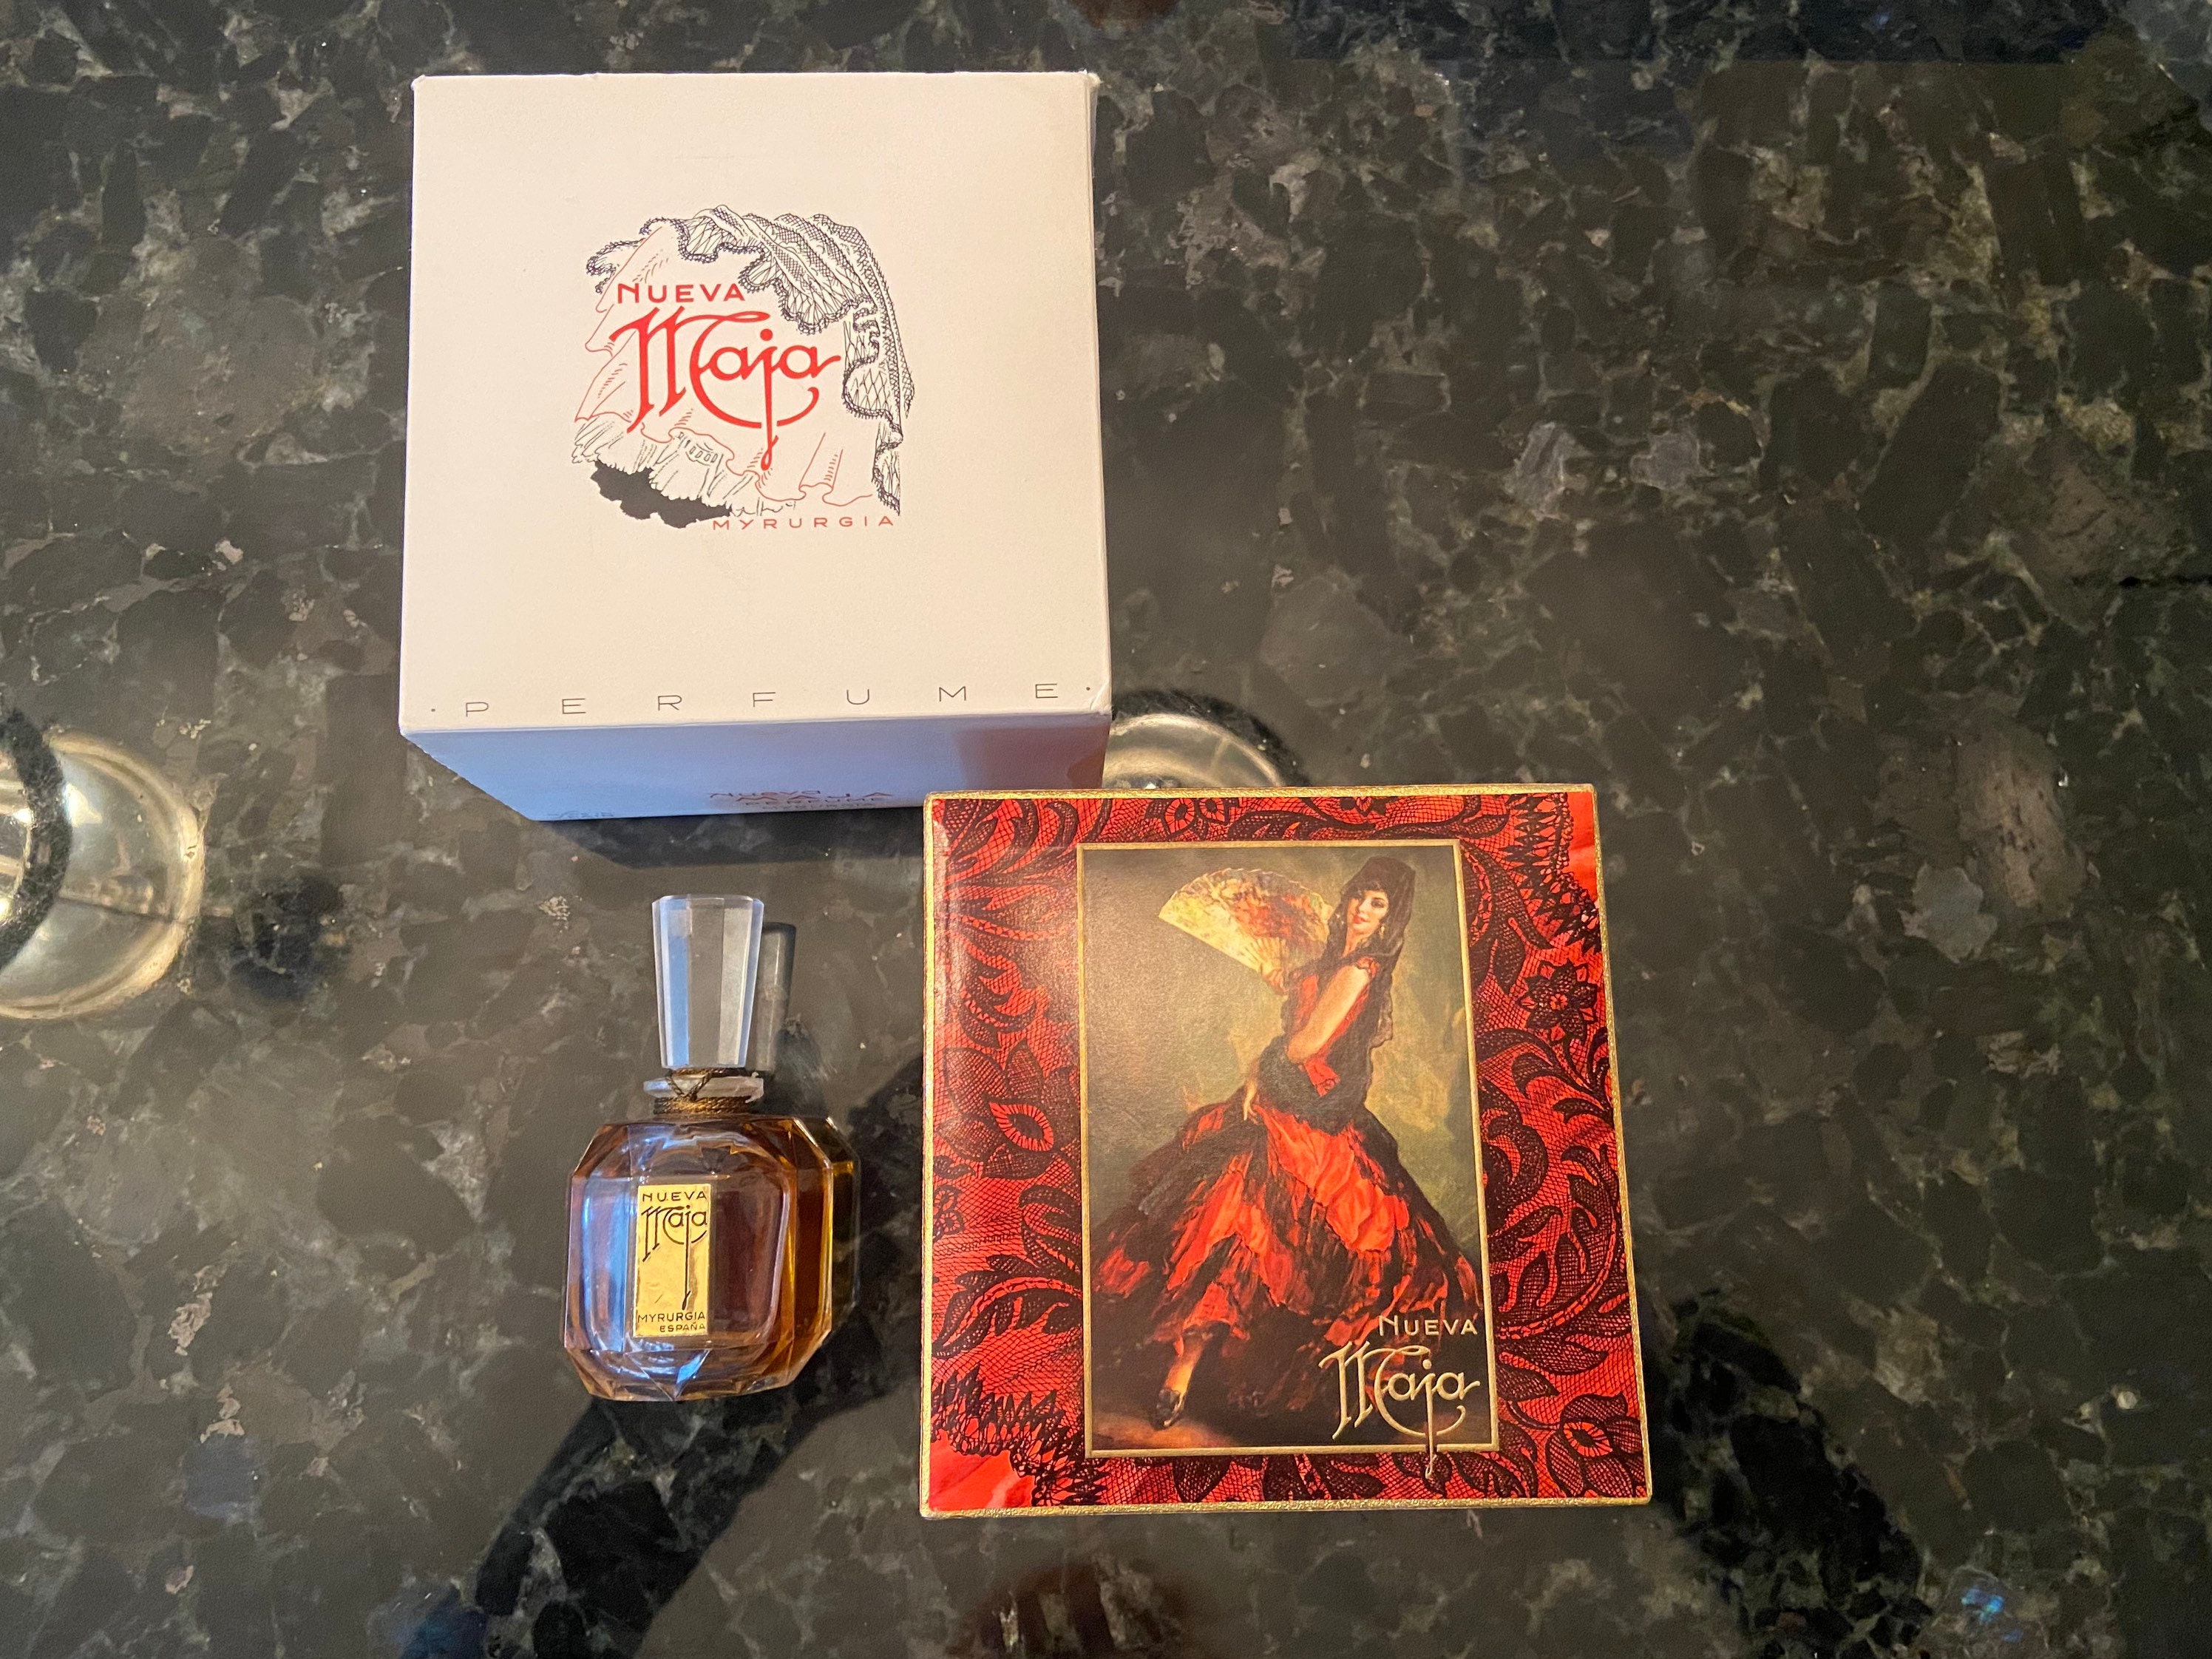 Antique Vintage Myrurgia Maderas De Oriente Perfume Bottle in Original Box  Art Deco Collectible Rare Fragrance 